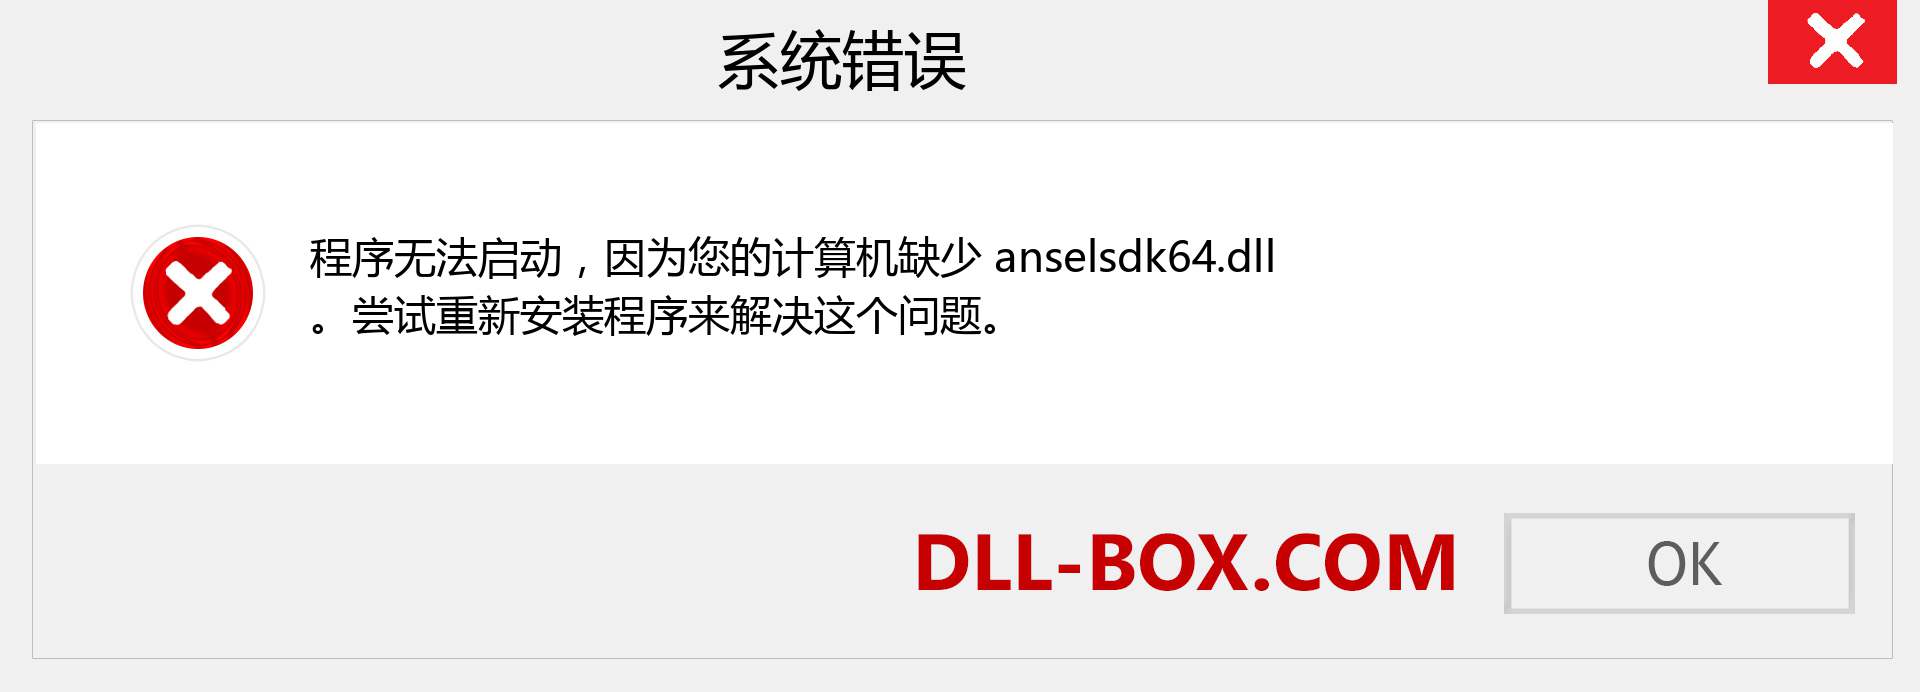 anselsdk64.dll 文件丢失？。 适用于 Windows 7、8、10 的下载 - 修复 Windows、照片、图像上的 anselsdk64 dll 丢失错误